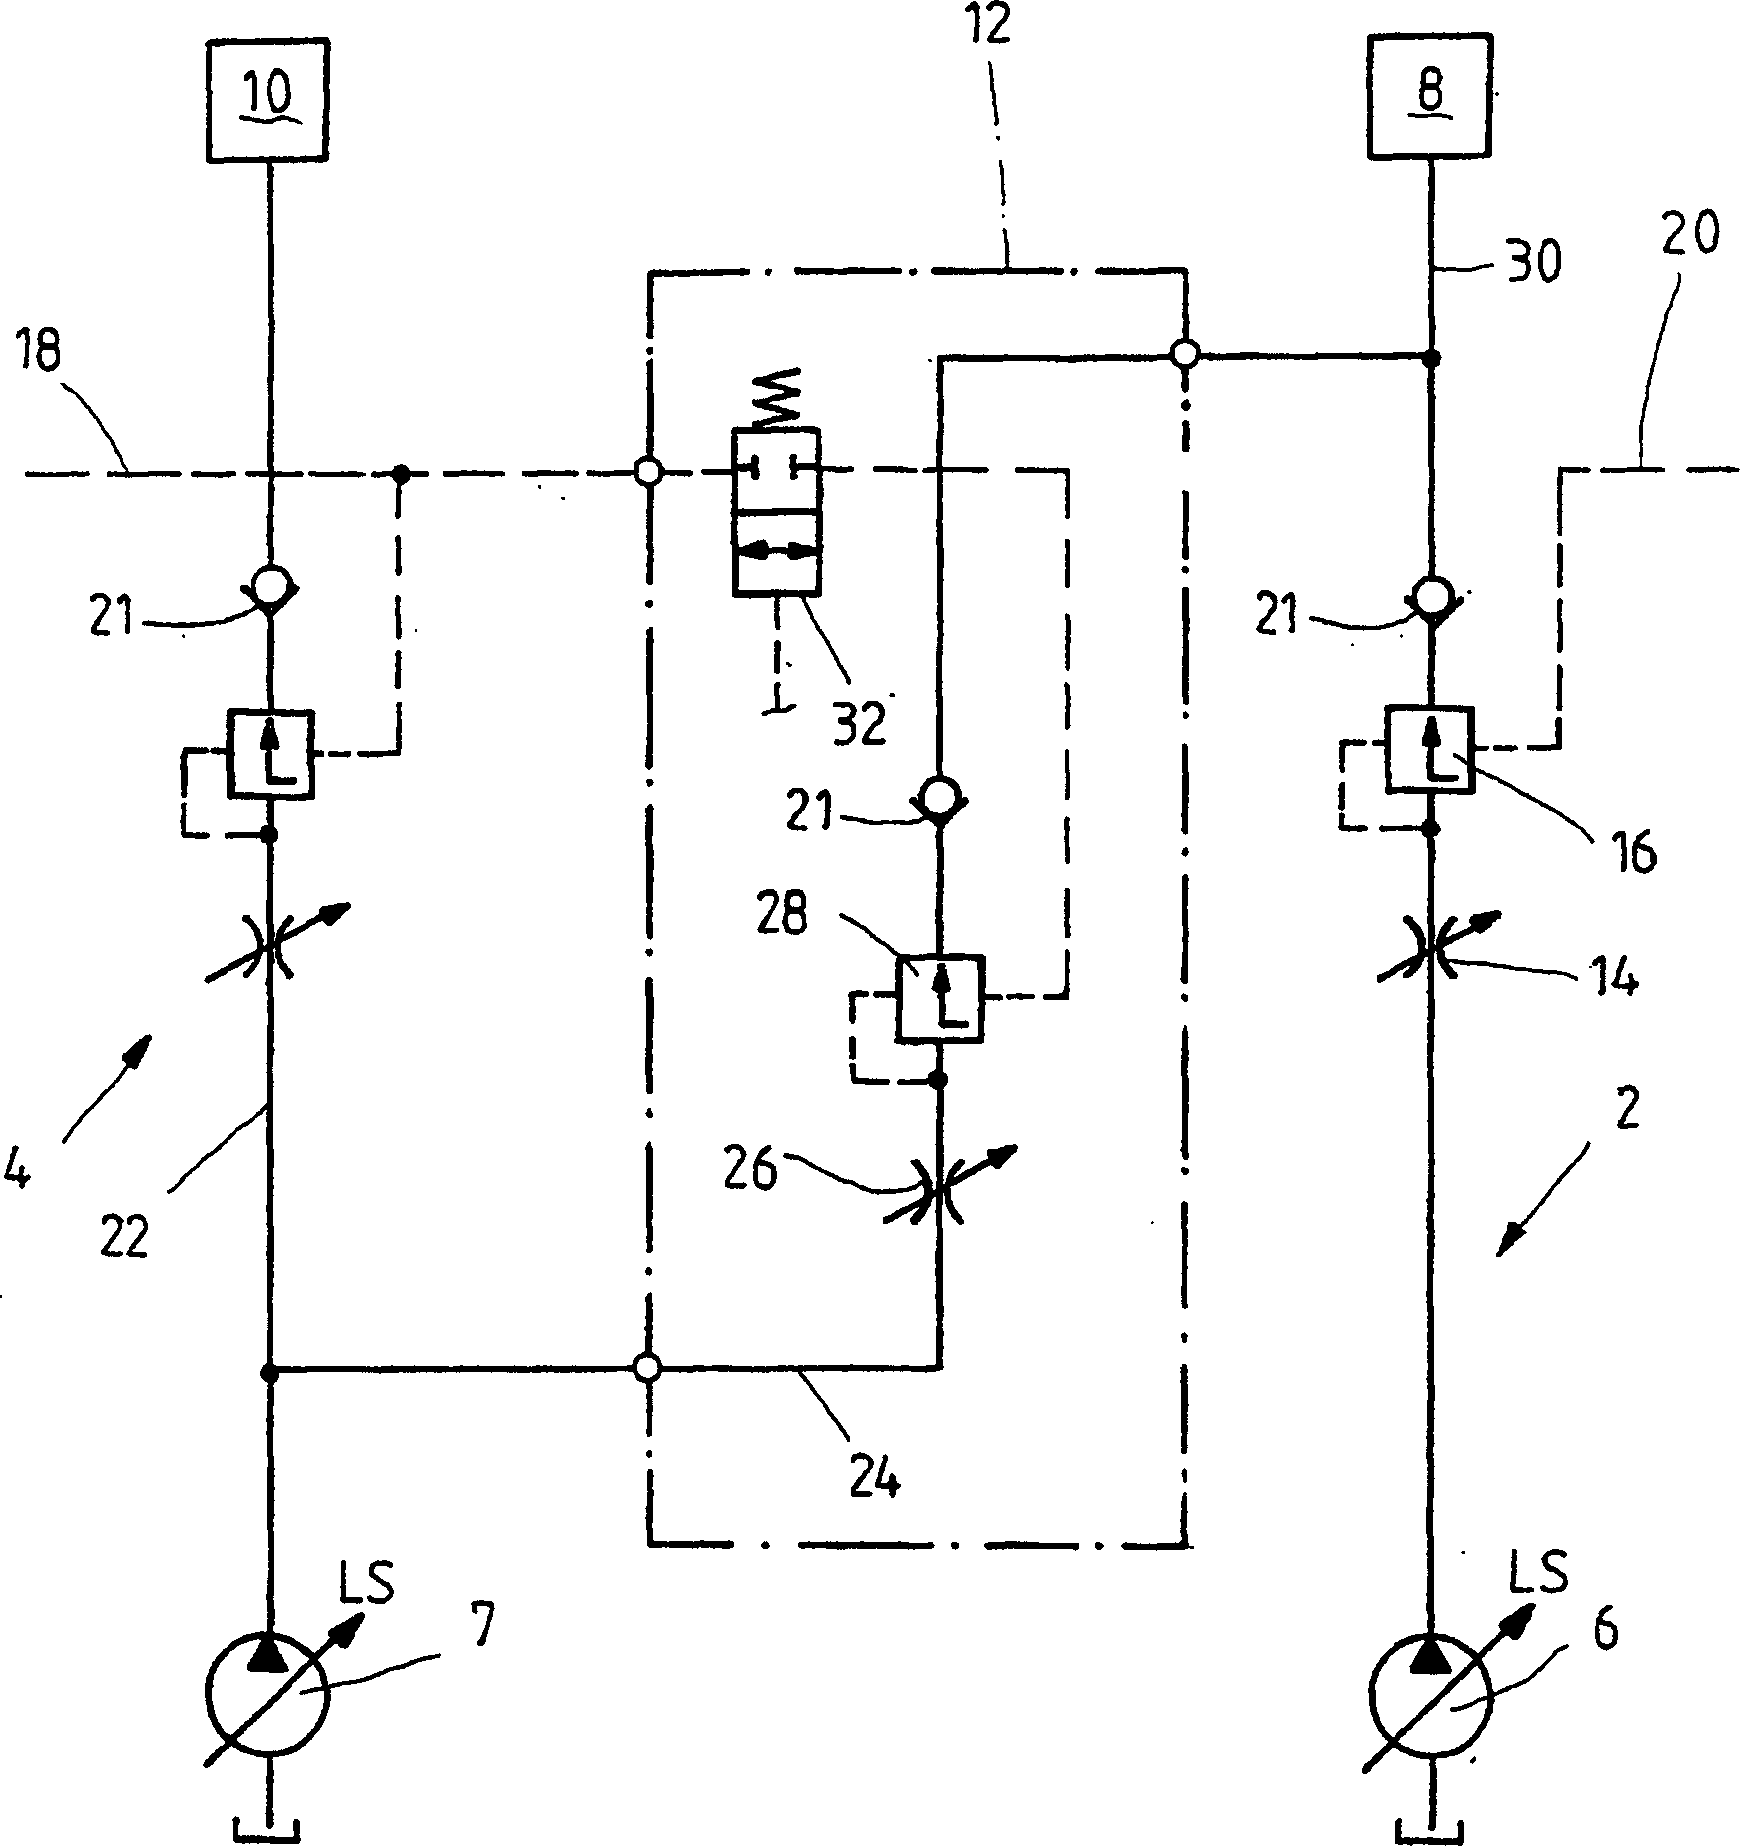 Hydraulic dual circuit system